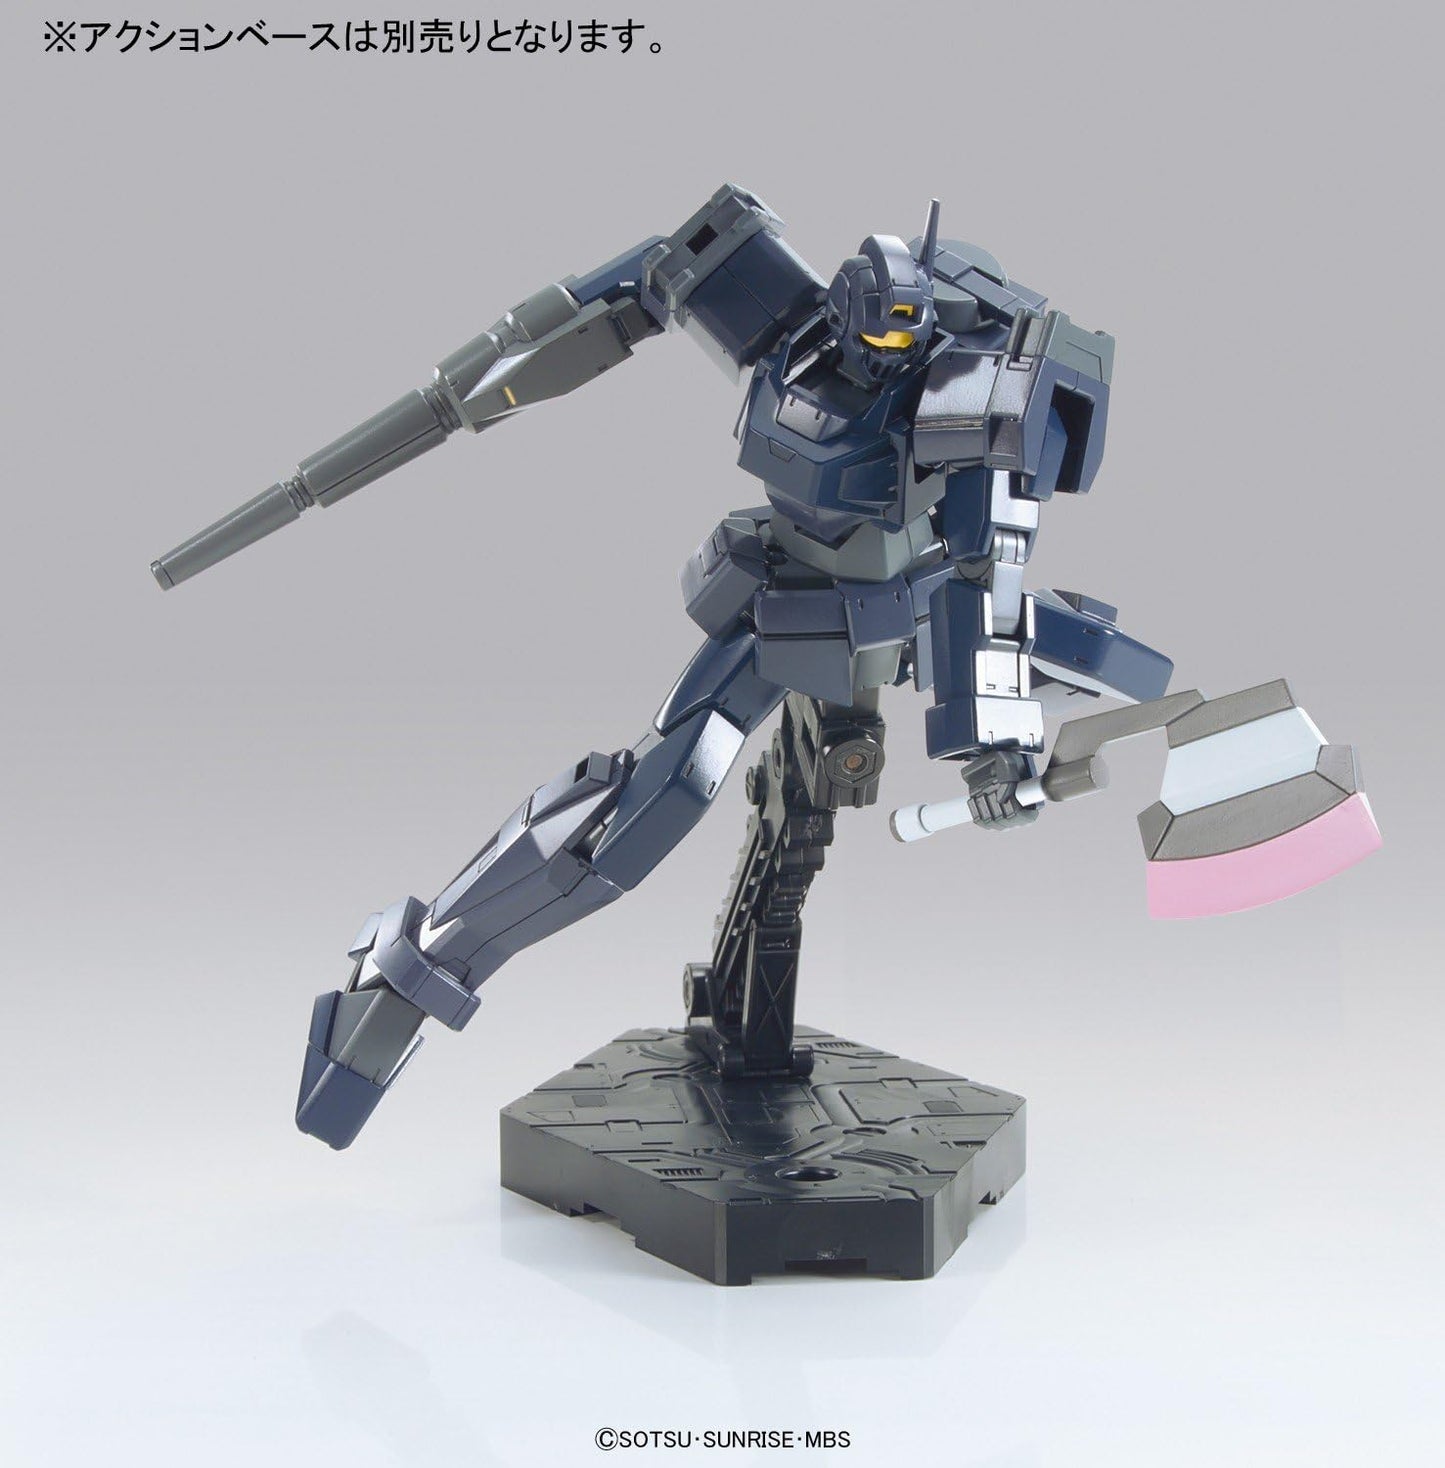 1/144 HG "Gundam AGE" Shaldoll Rogue | animota